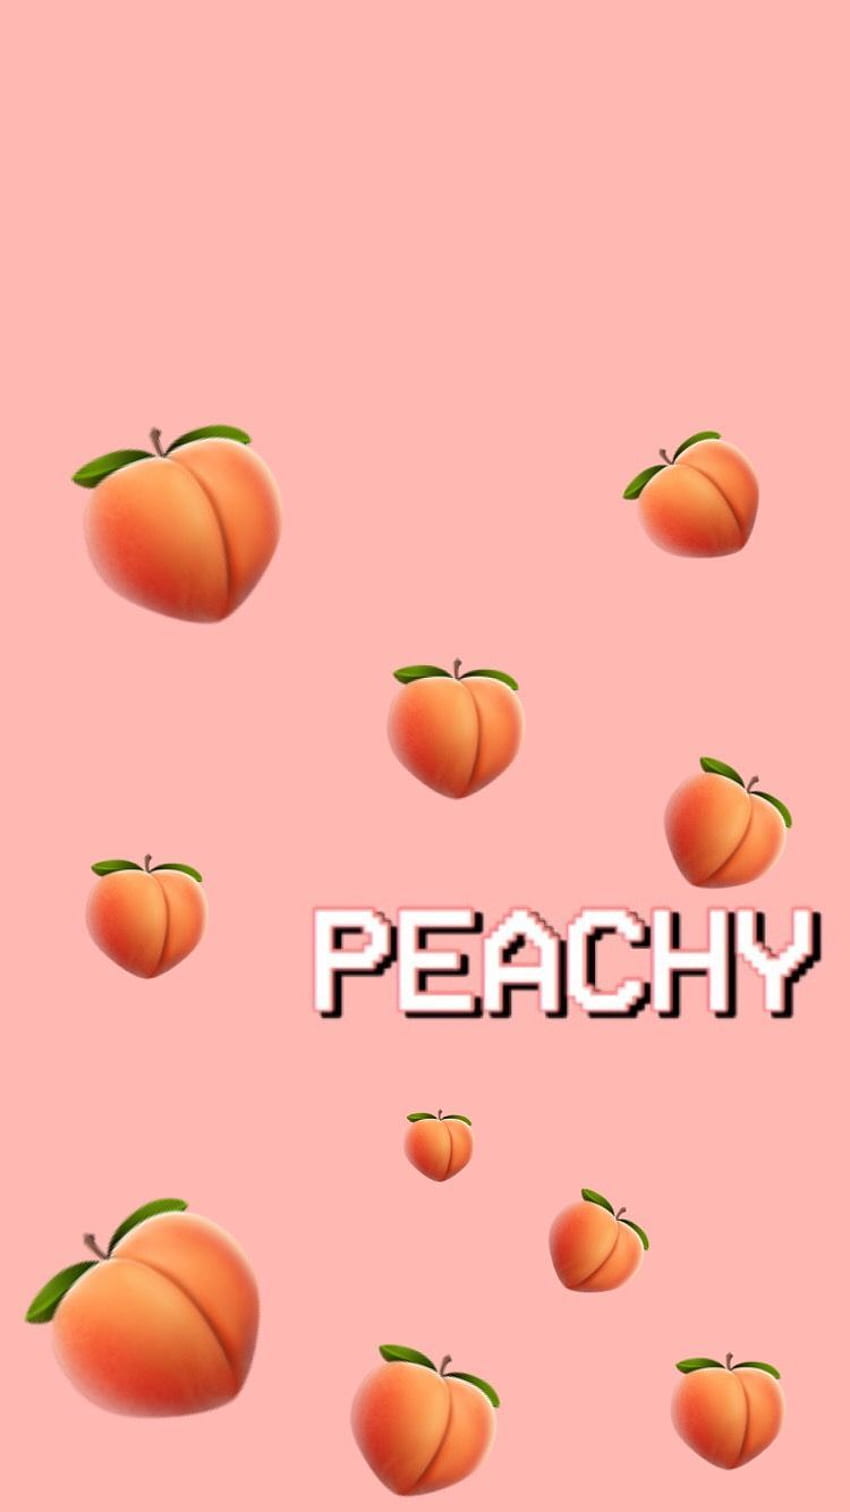 Peaches Peachy Hd Phone Wallpaper Pxfuel 3690